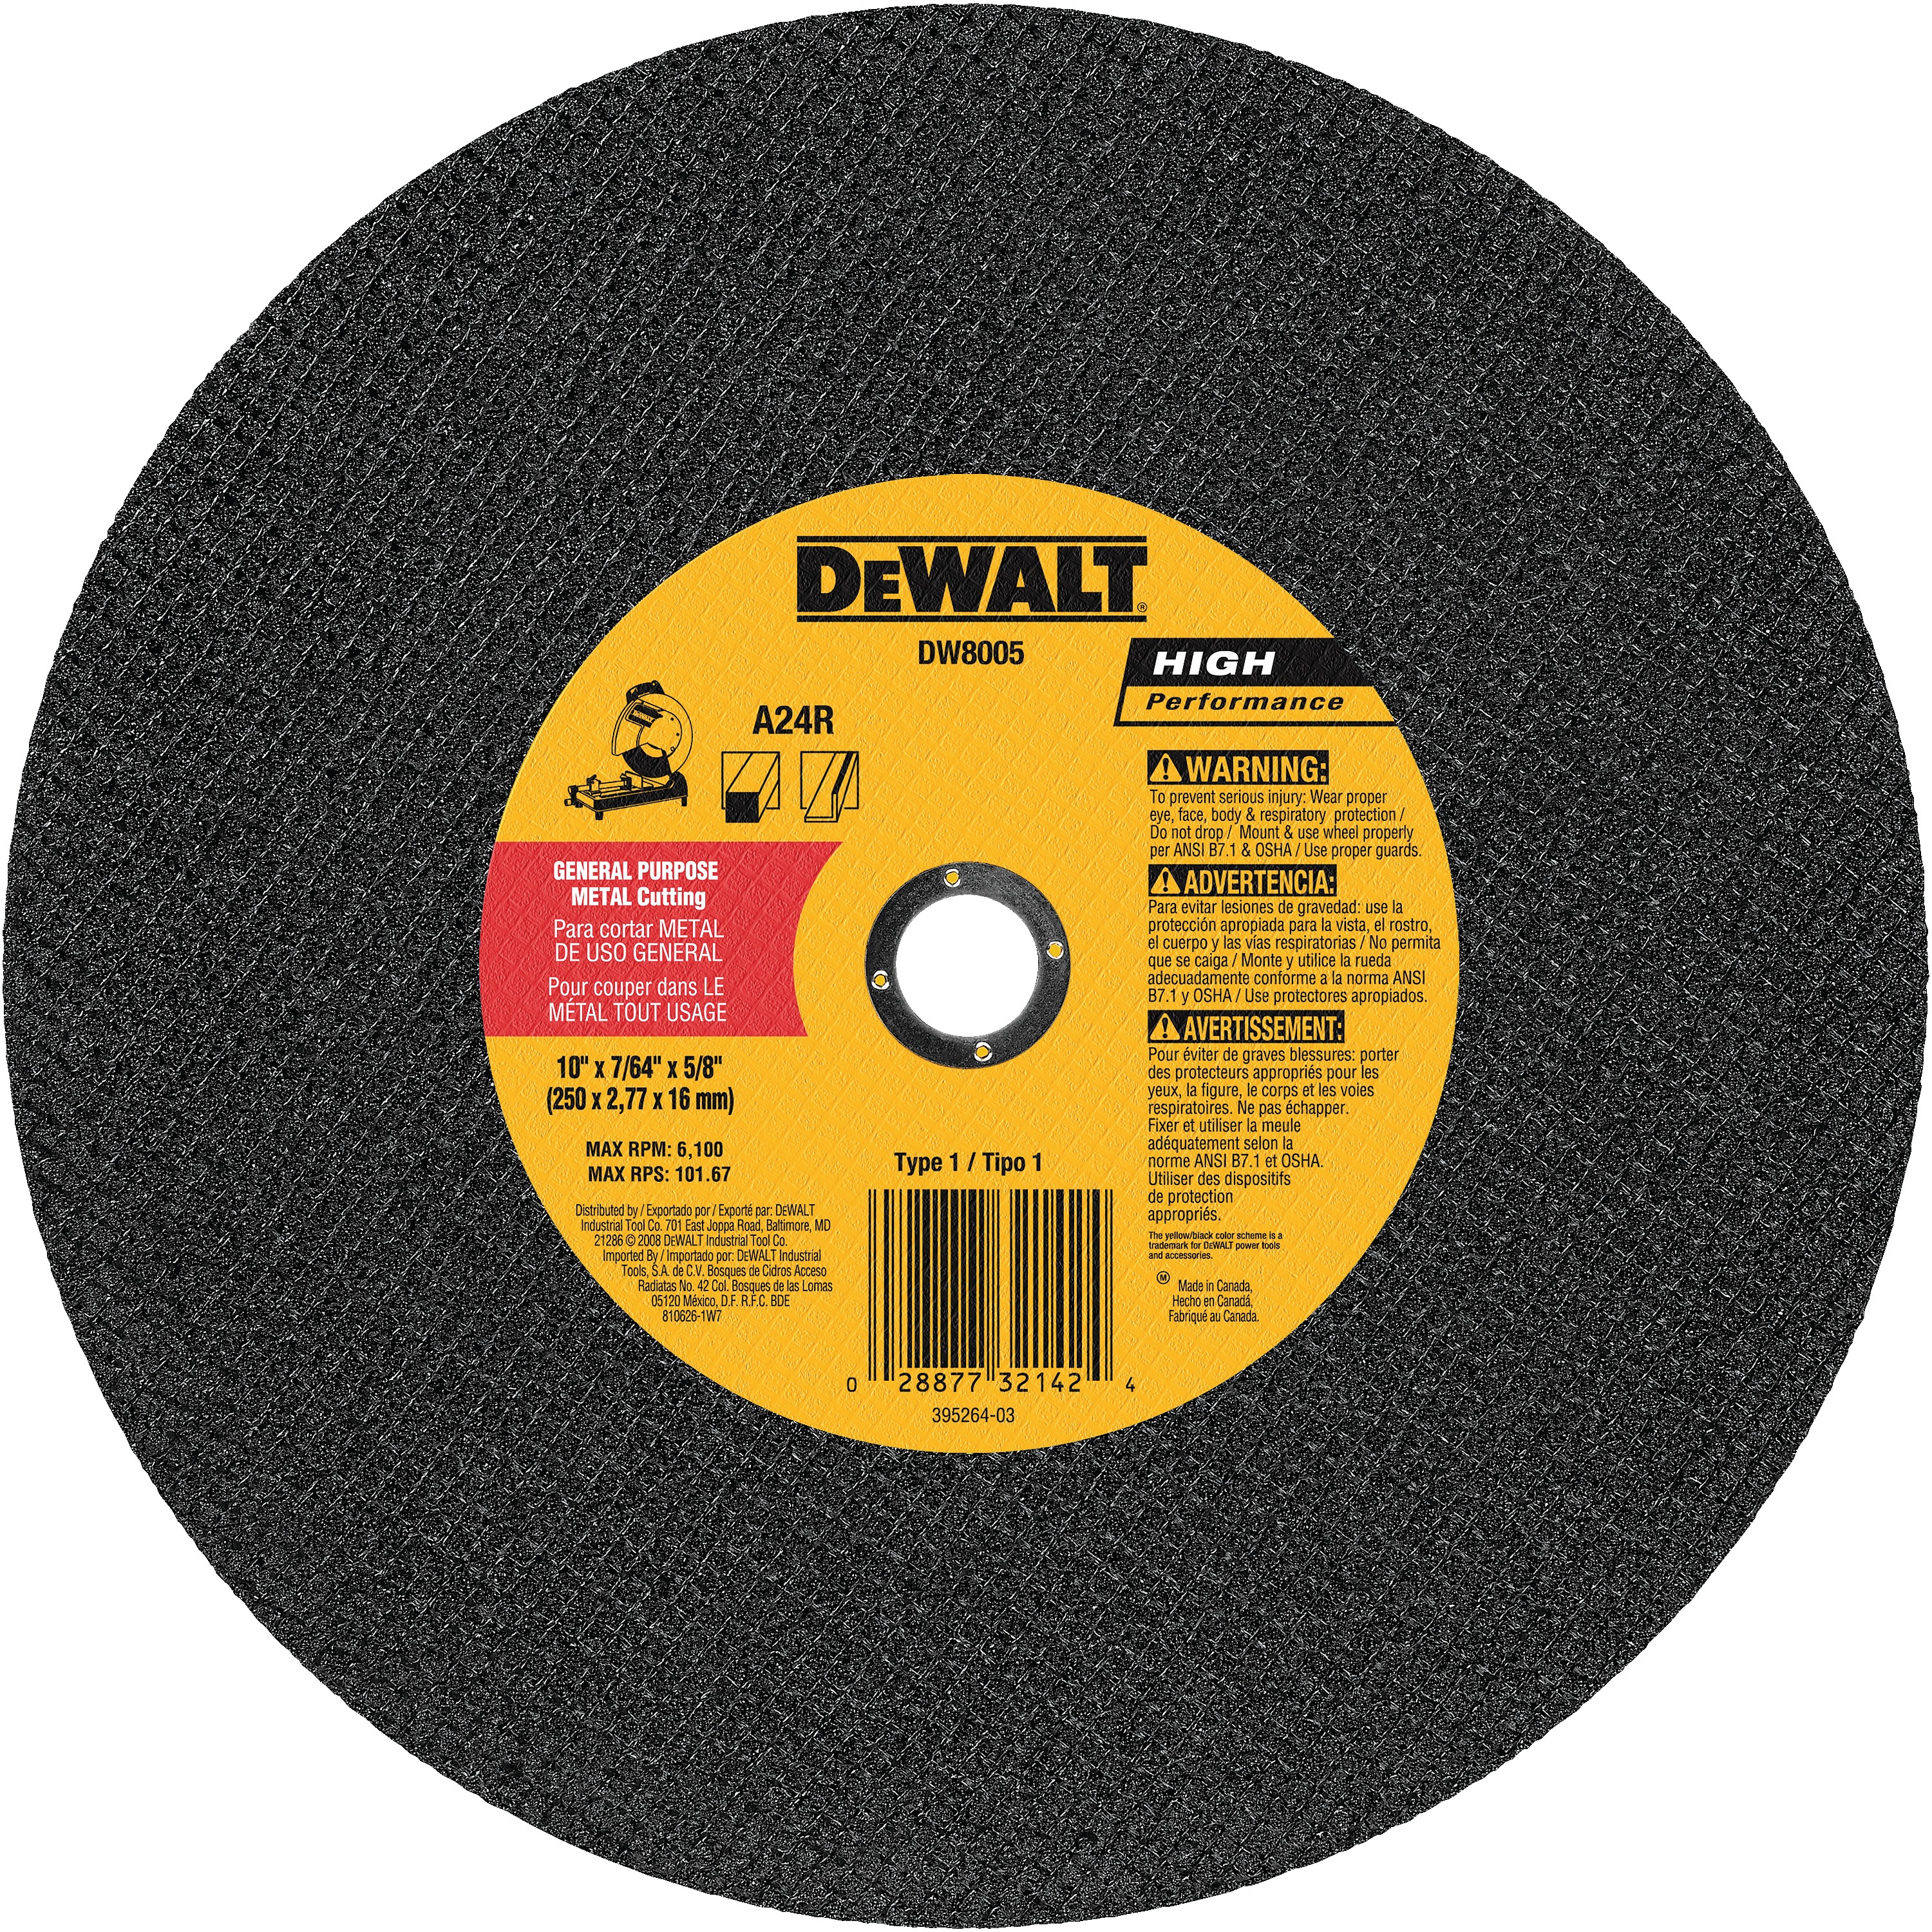 DEWALT - 10 x 764 x 58 general purpose cutting wheel - DW8005